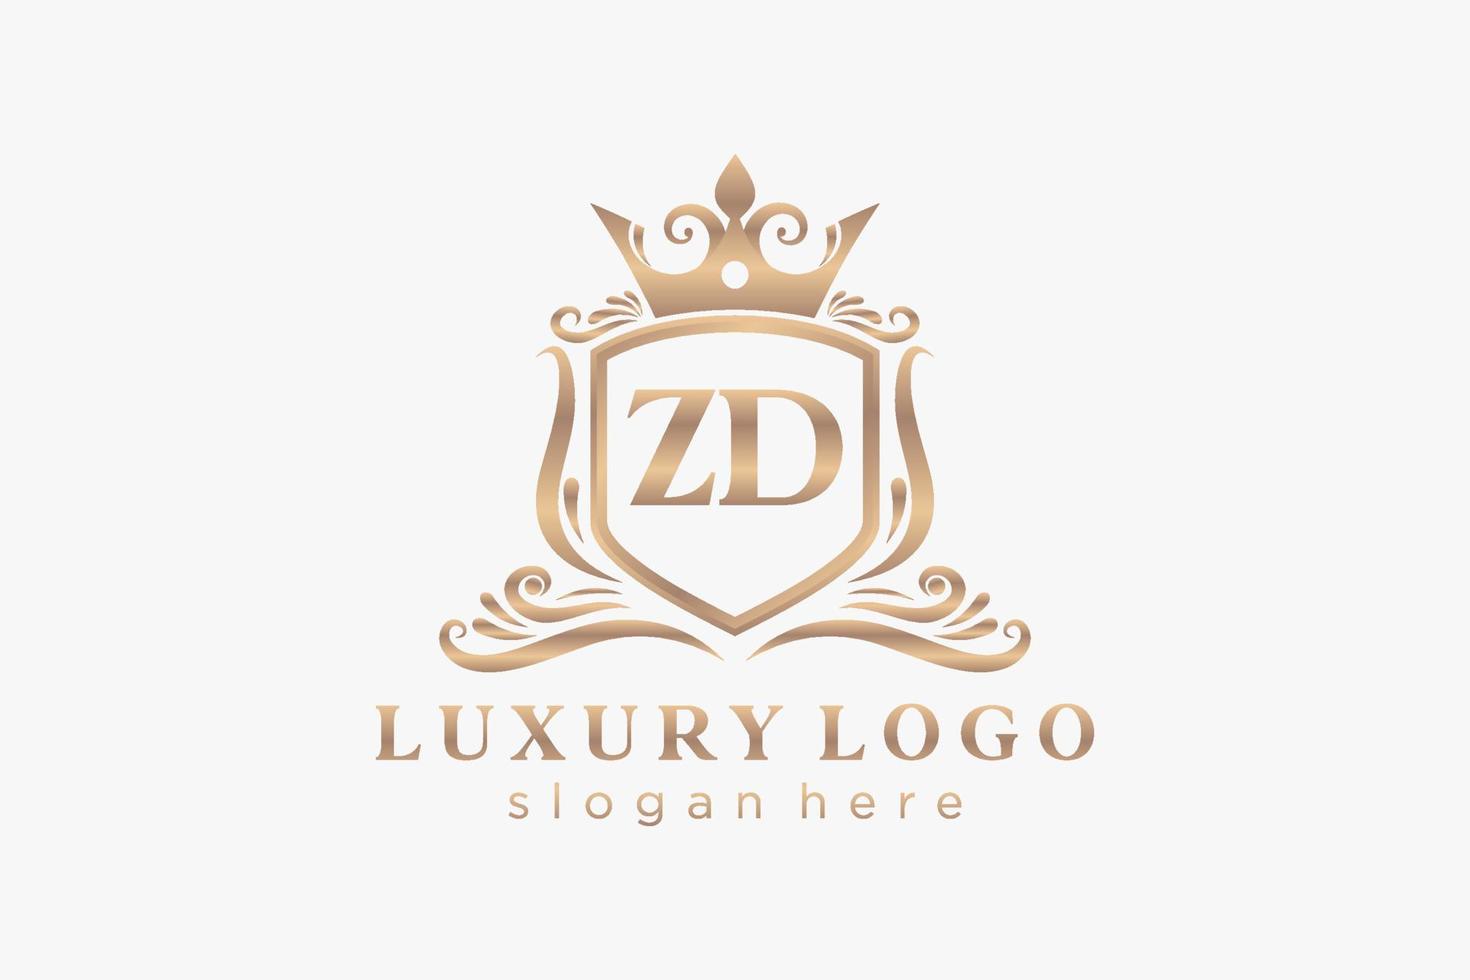 eerste zd brief Koninklijk luxe logo sjabloon in vector kunst voor restaurant, royalty, boetiek, cafe, hotel, heraldisch, sieraden, mode en andere vector illustratie.